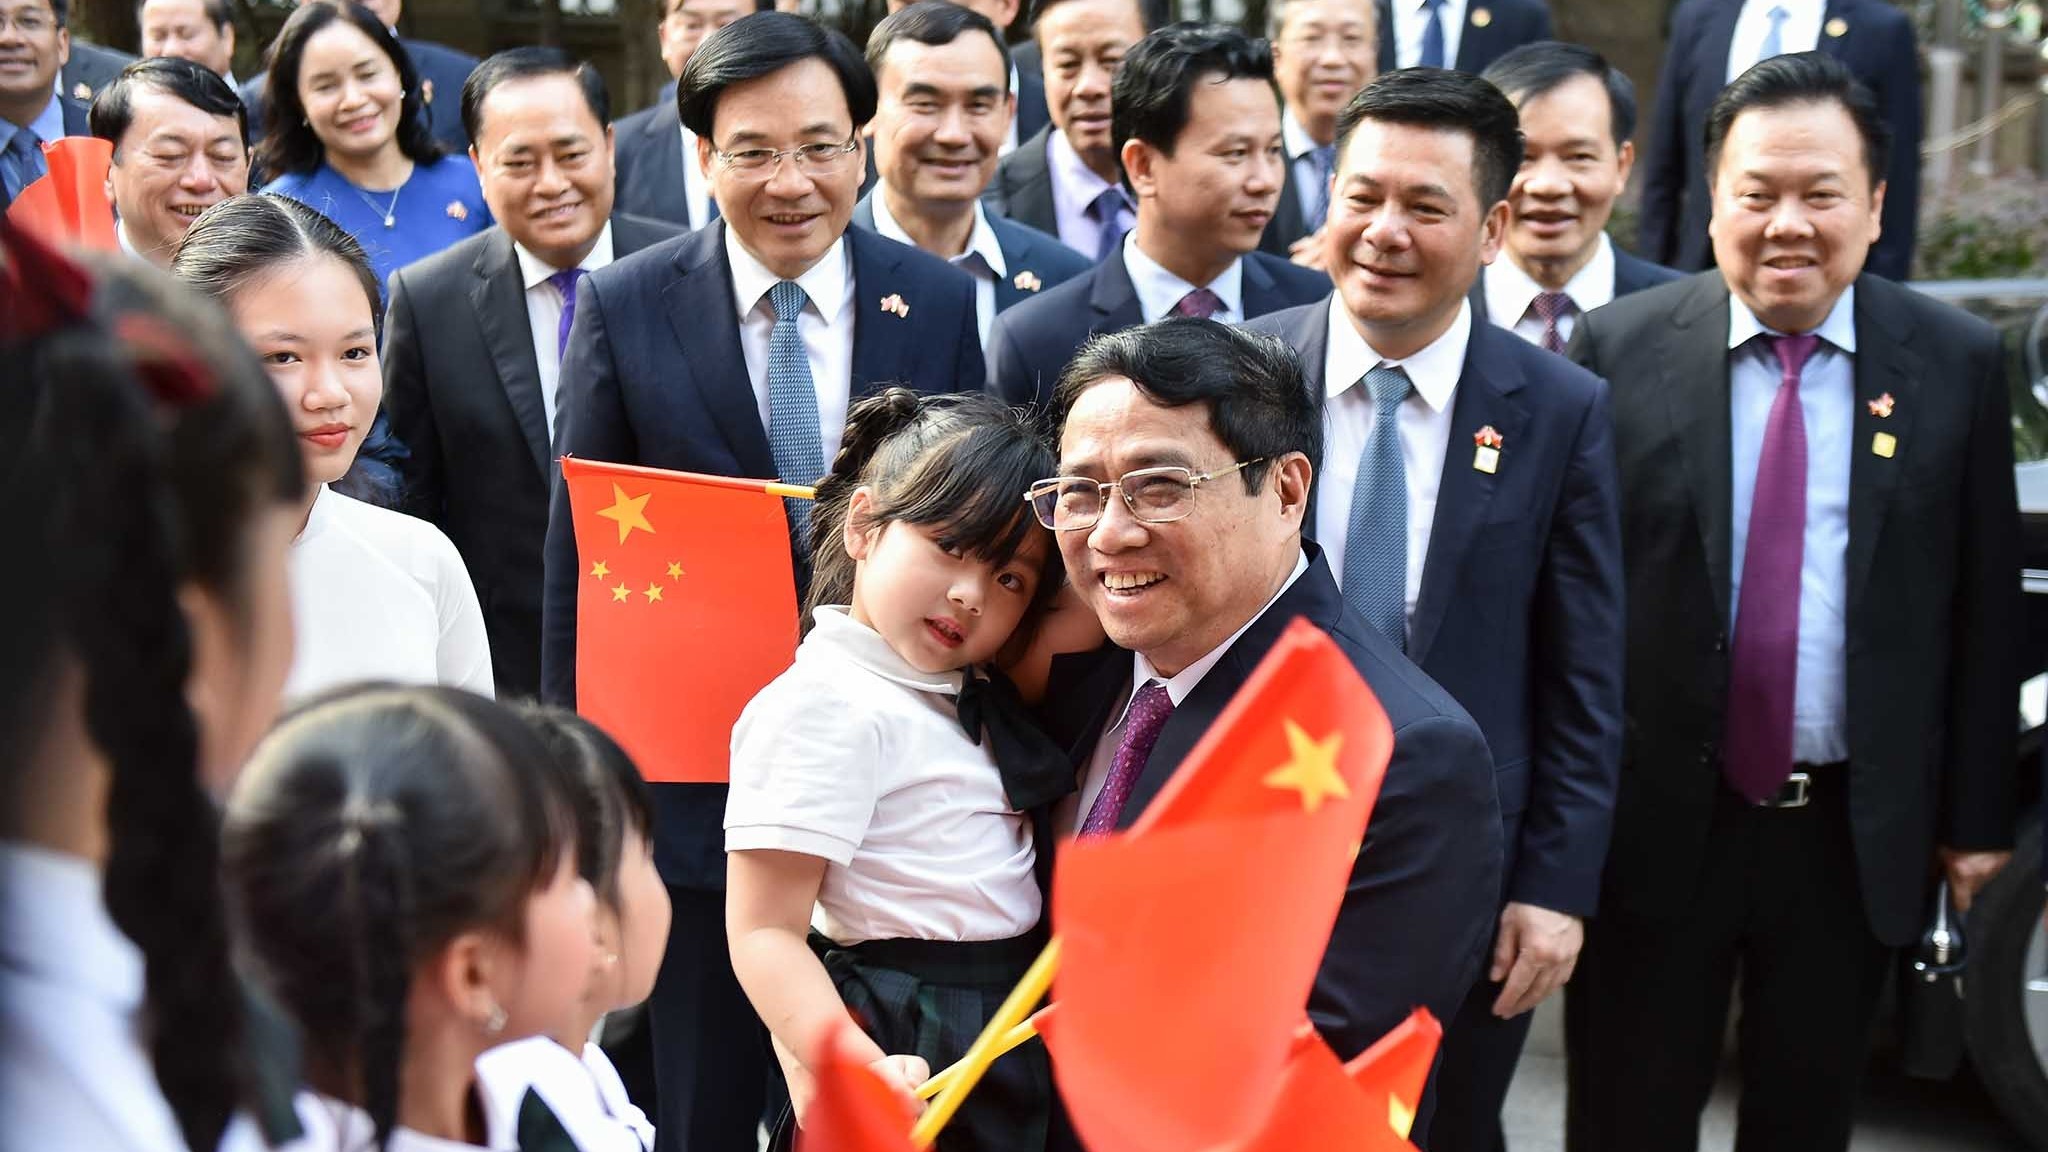 Cùng chung trách nhiệm thúc đẩy quan hệ tốt đẹp Việt Nam-Trung Quốc